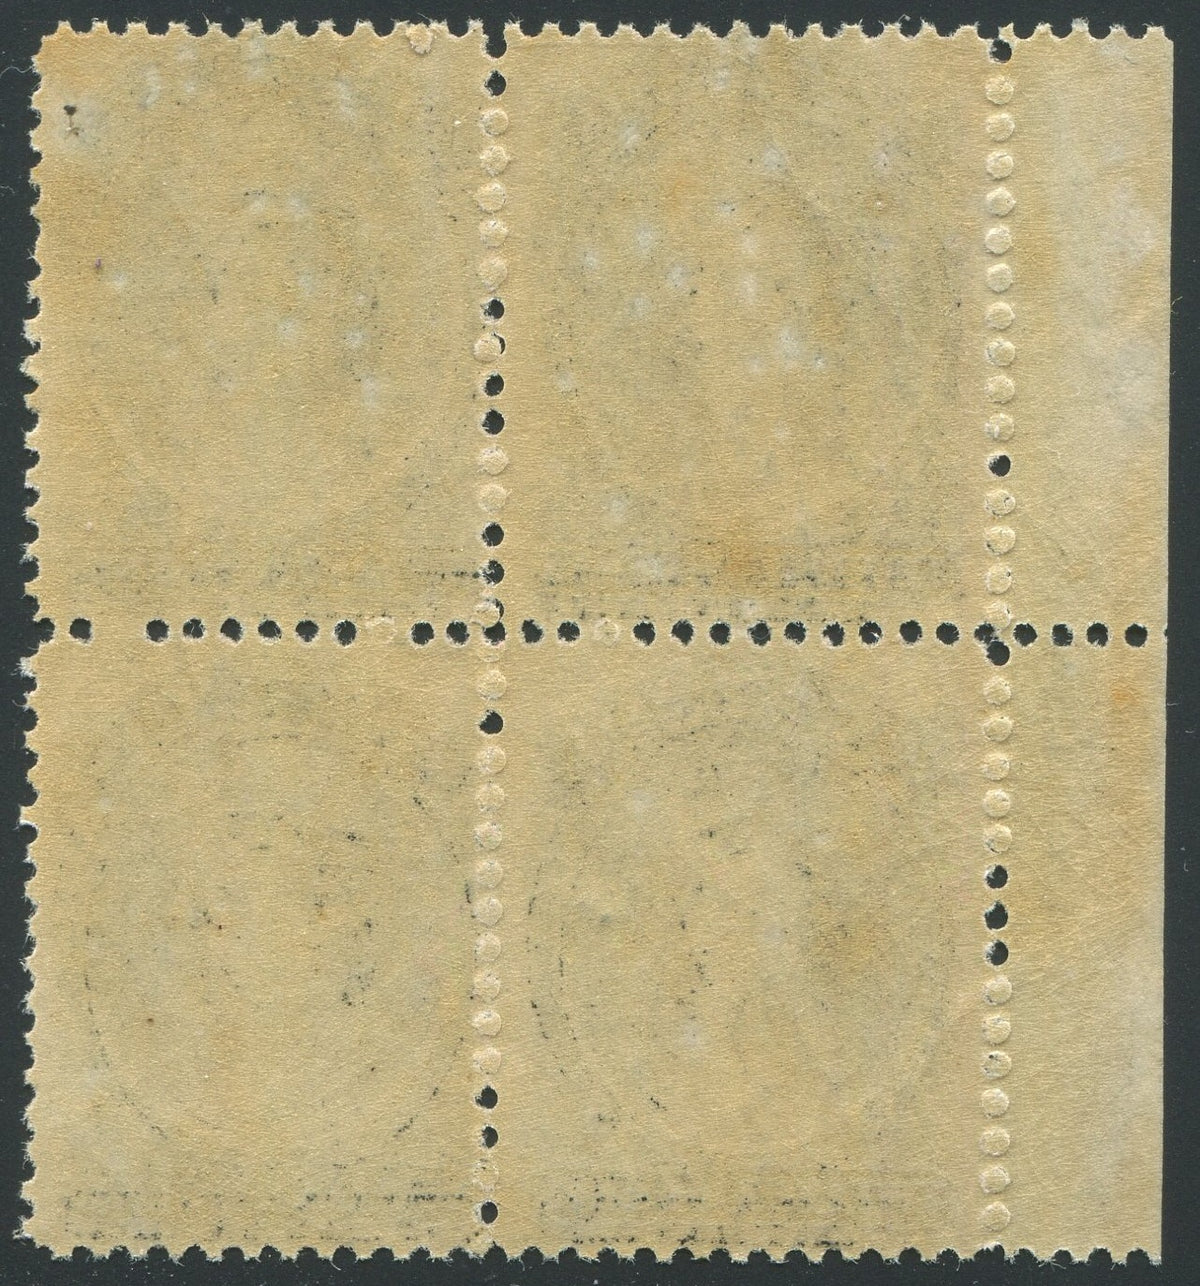 0013NS1910 - Nova Scotia #13 - Mint Inscription Block of 4